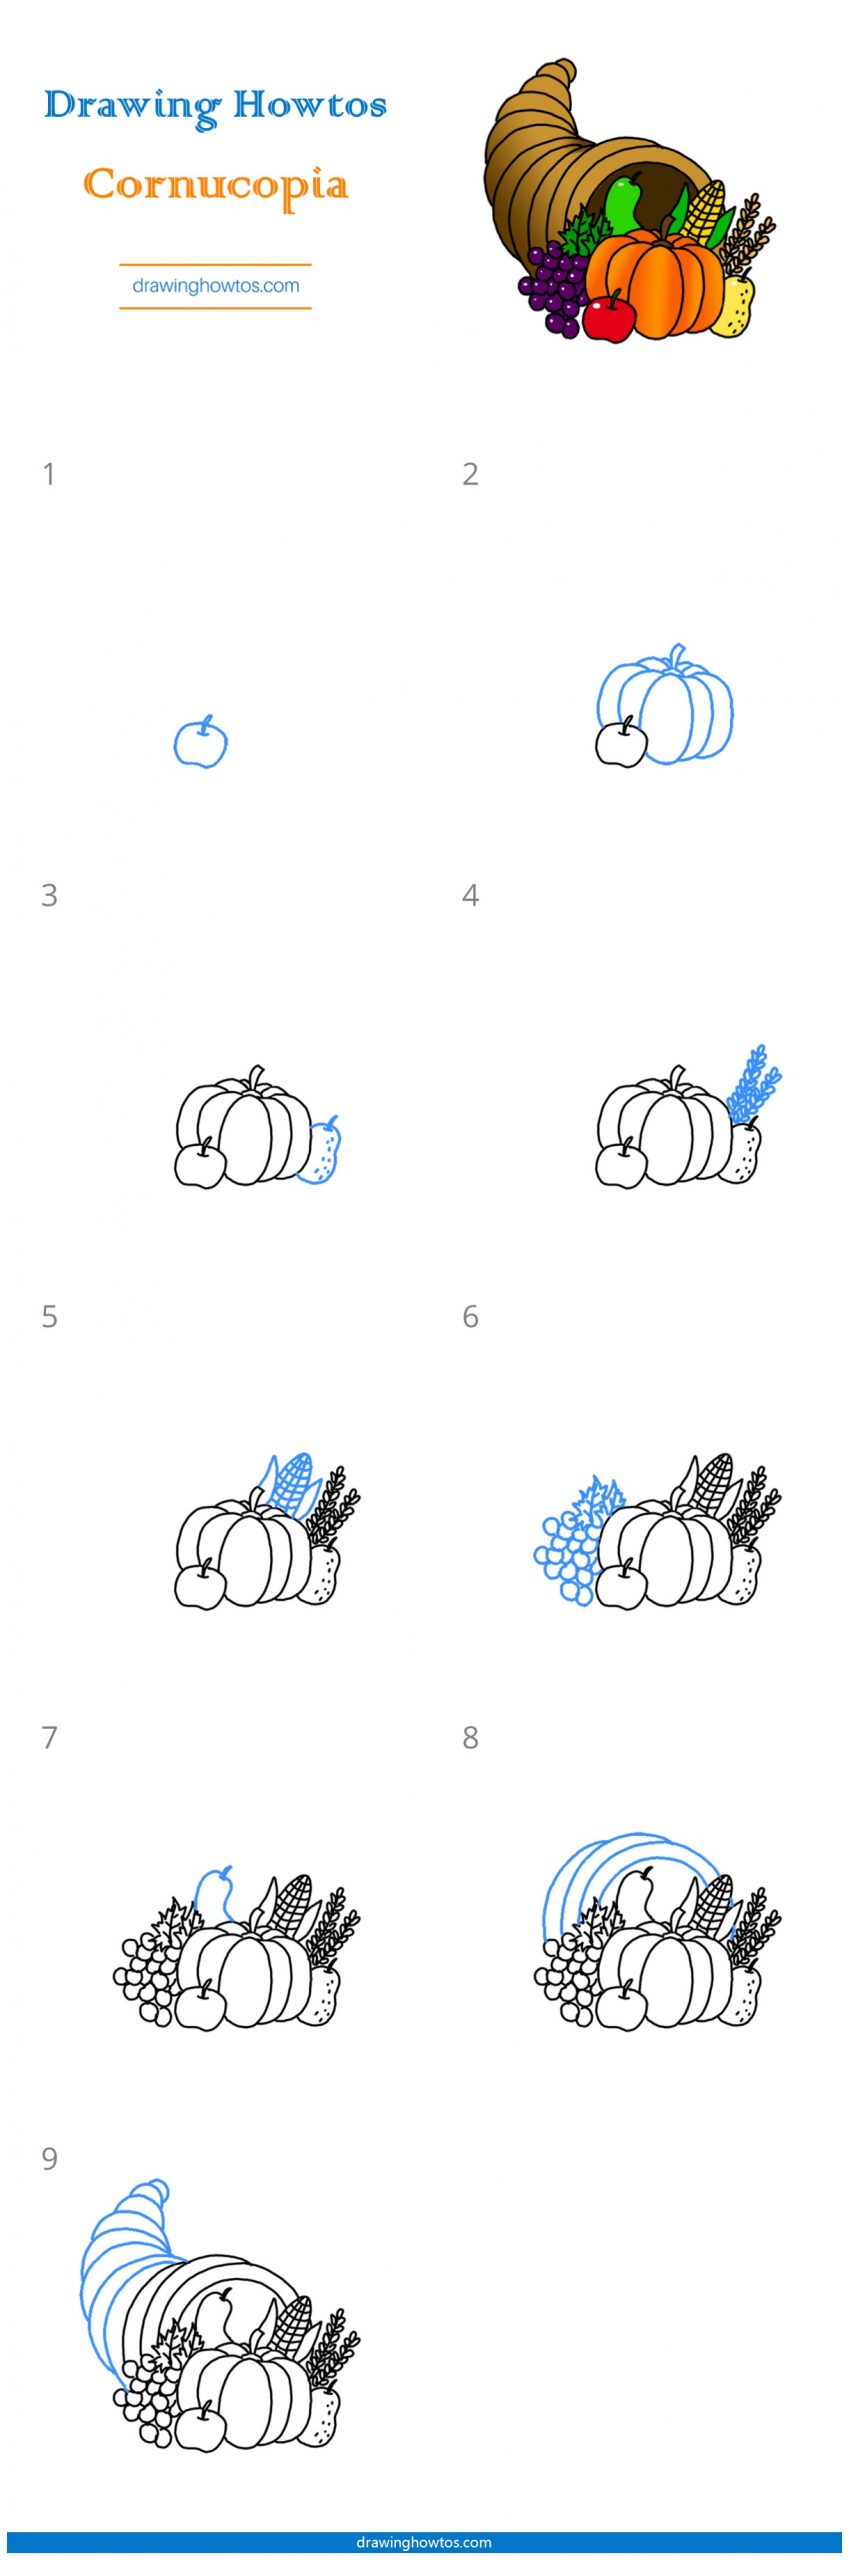 How to Draw a Cornucopia Step by Step